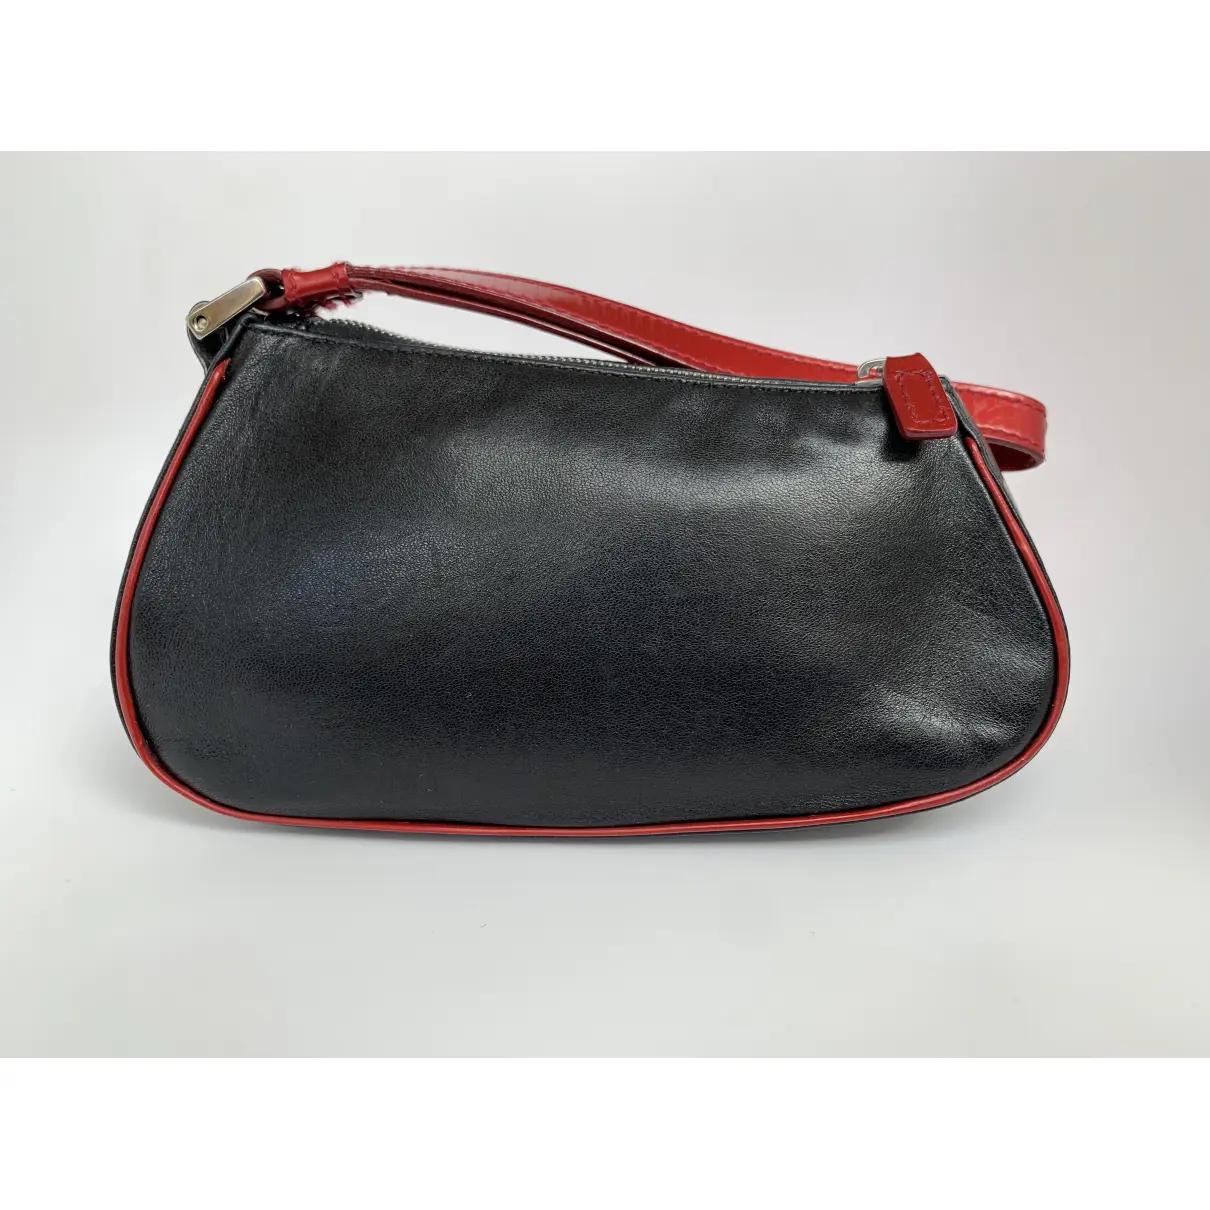 Cadillac leather handbag Dior - Vintage